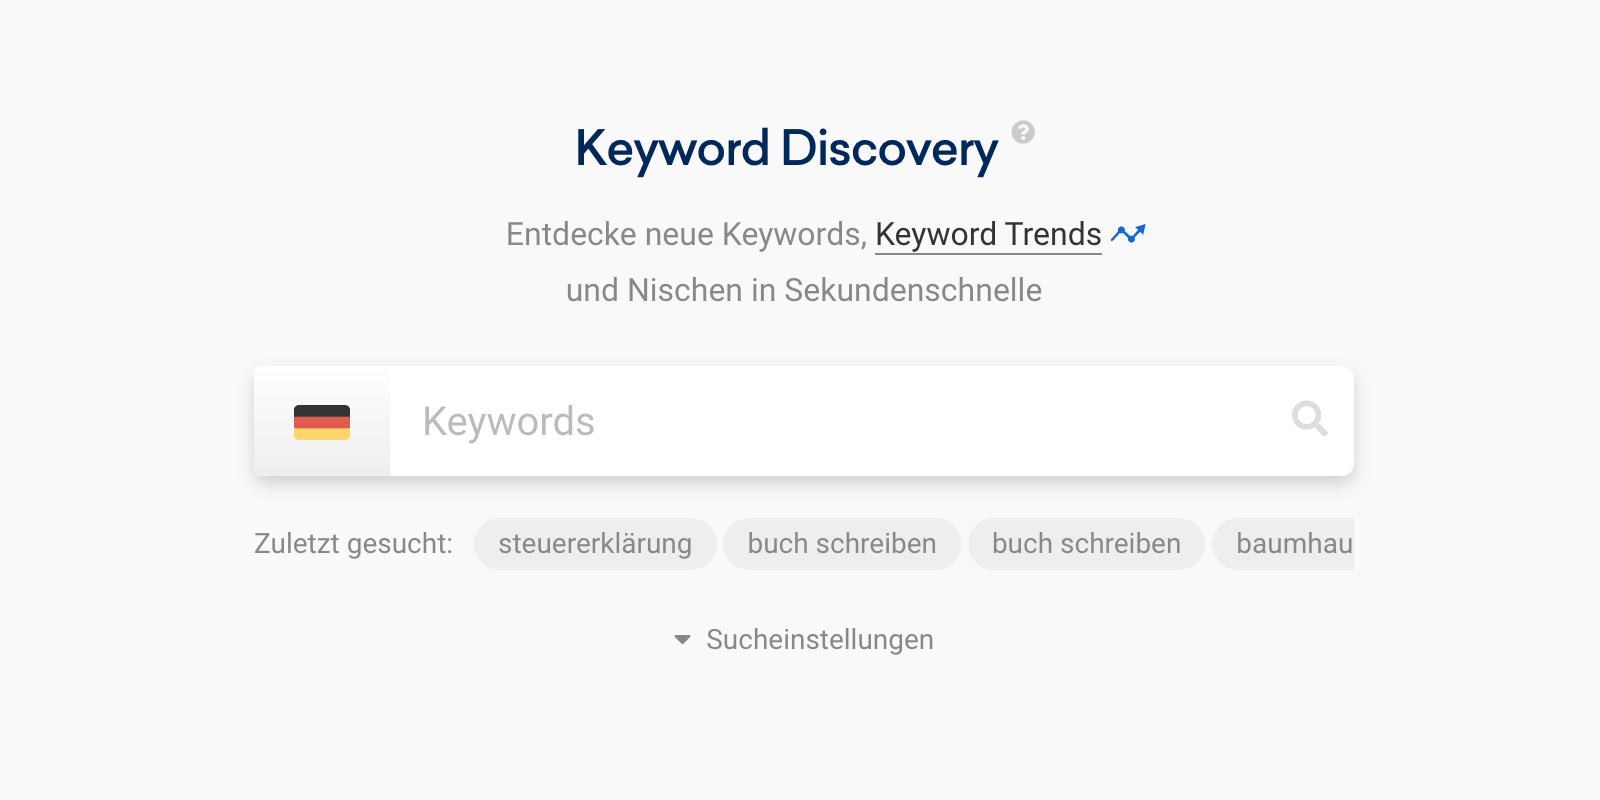 Die Keyword Discovery wird über die Eingabe von See-Keywords in einen Suchschlitz gestartet. Am Anfang des Suchschlitzes ist eine Länderflagge - in diesem Fall die von Deutschland - zur Auswahl der entsprechenden Länderdatenbank.